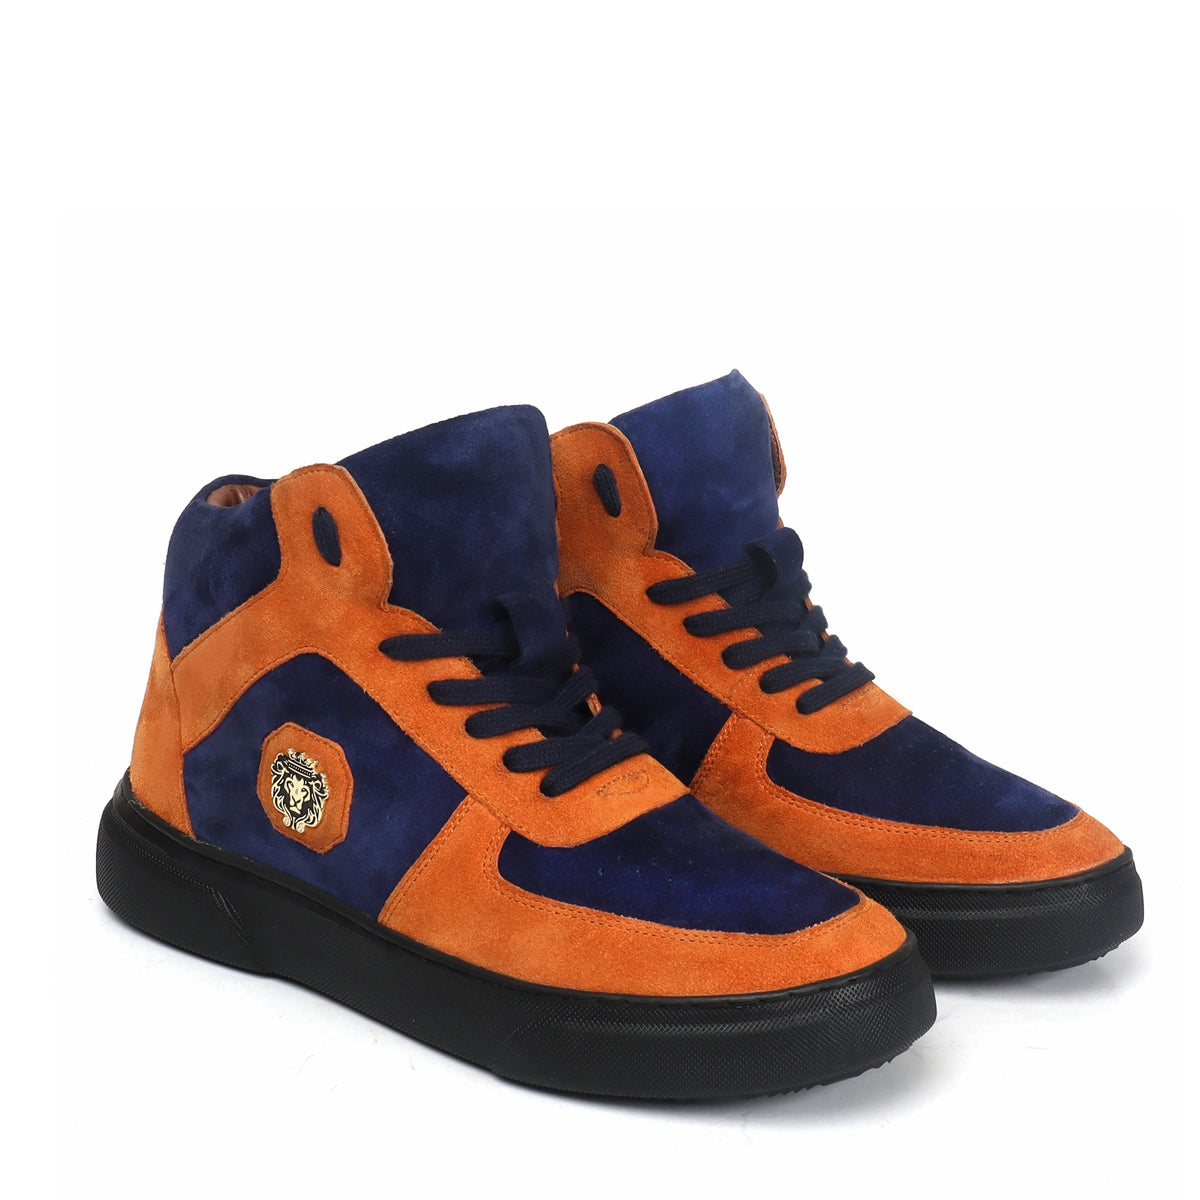 Orange & Blue Detailing Suede Leather Mid Top Sneakers by Brune & Bareskin